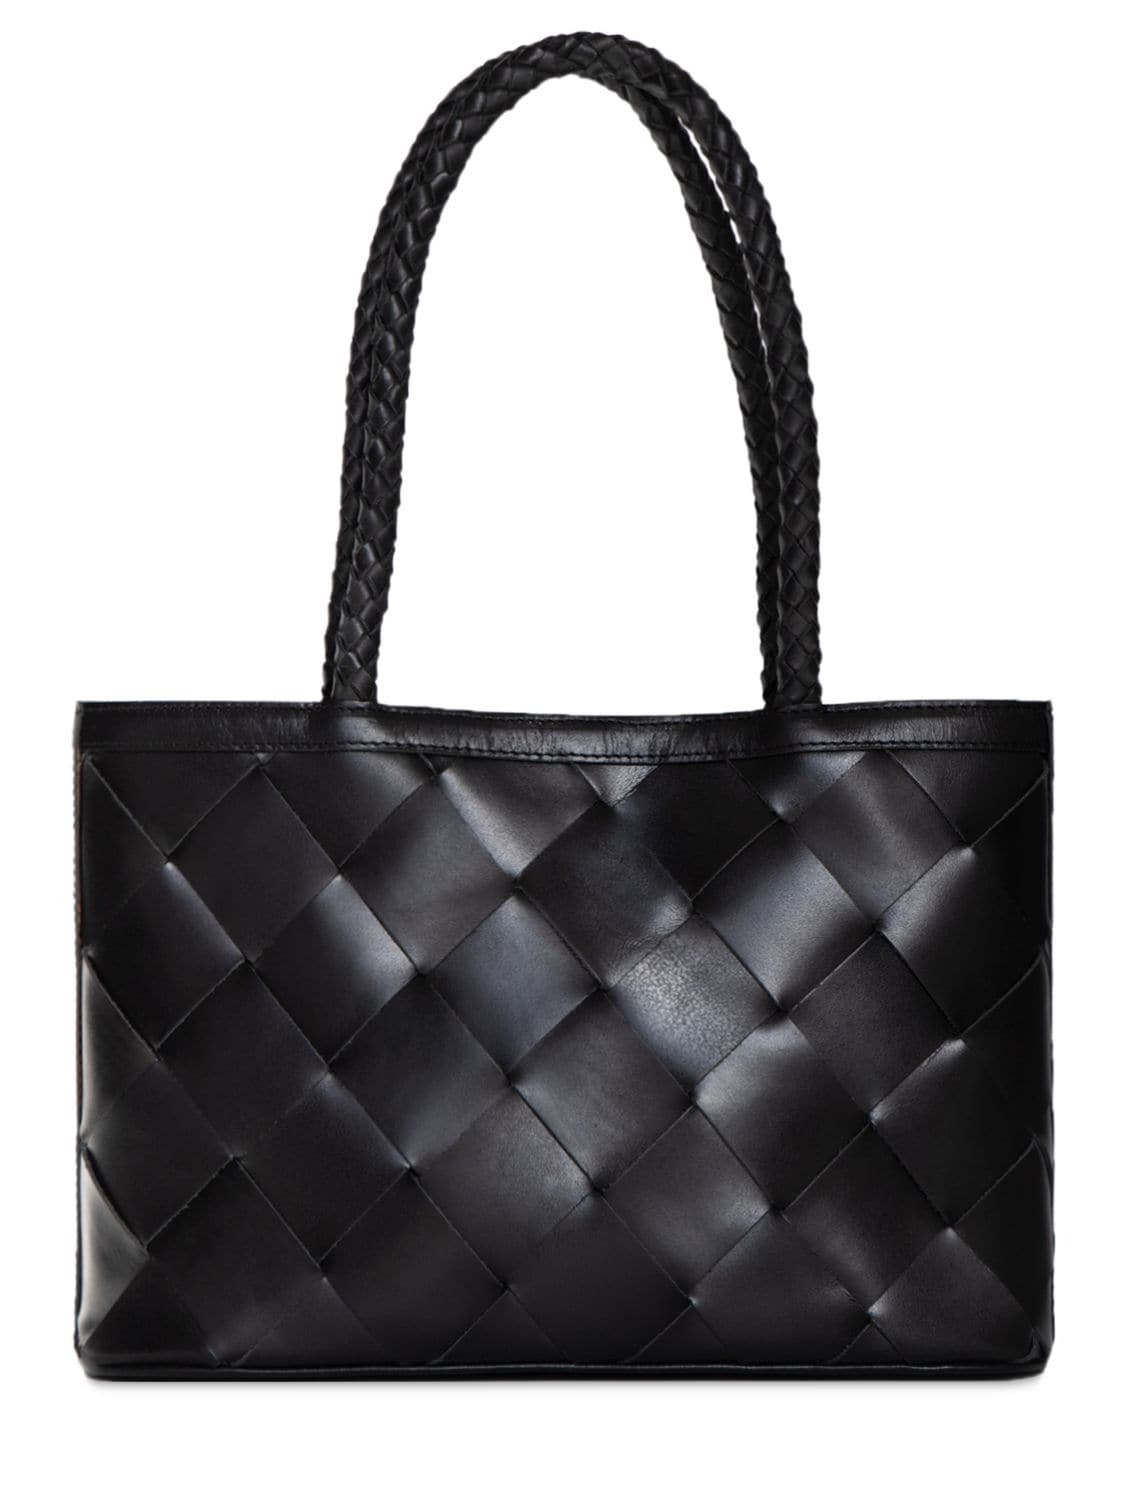 BEMBIEN Ella Woven Leather Shoulder Bag in black